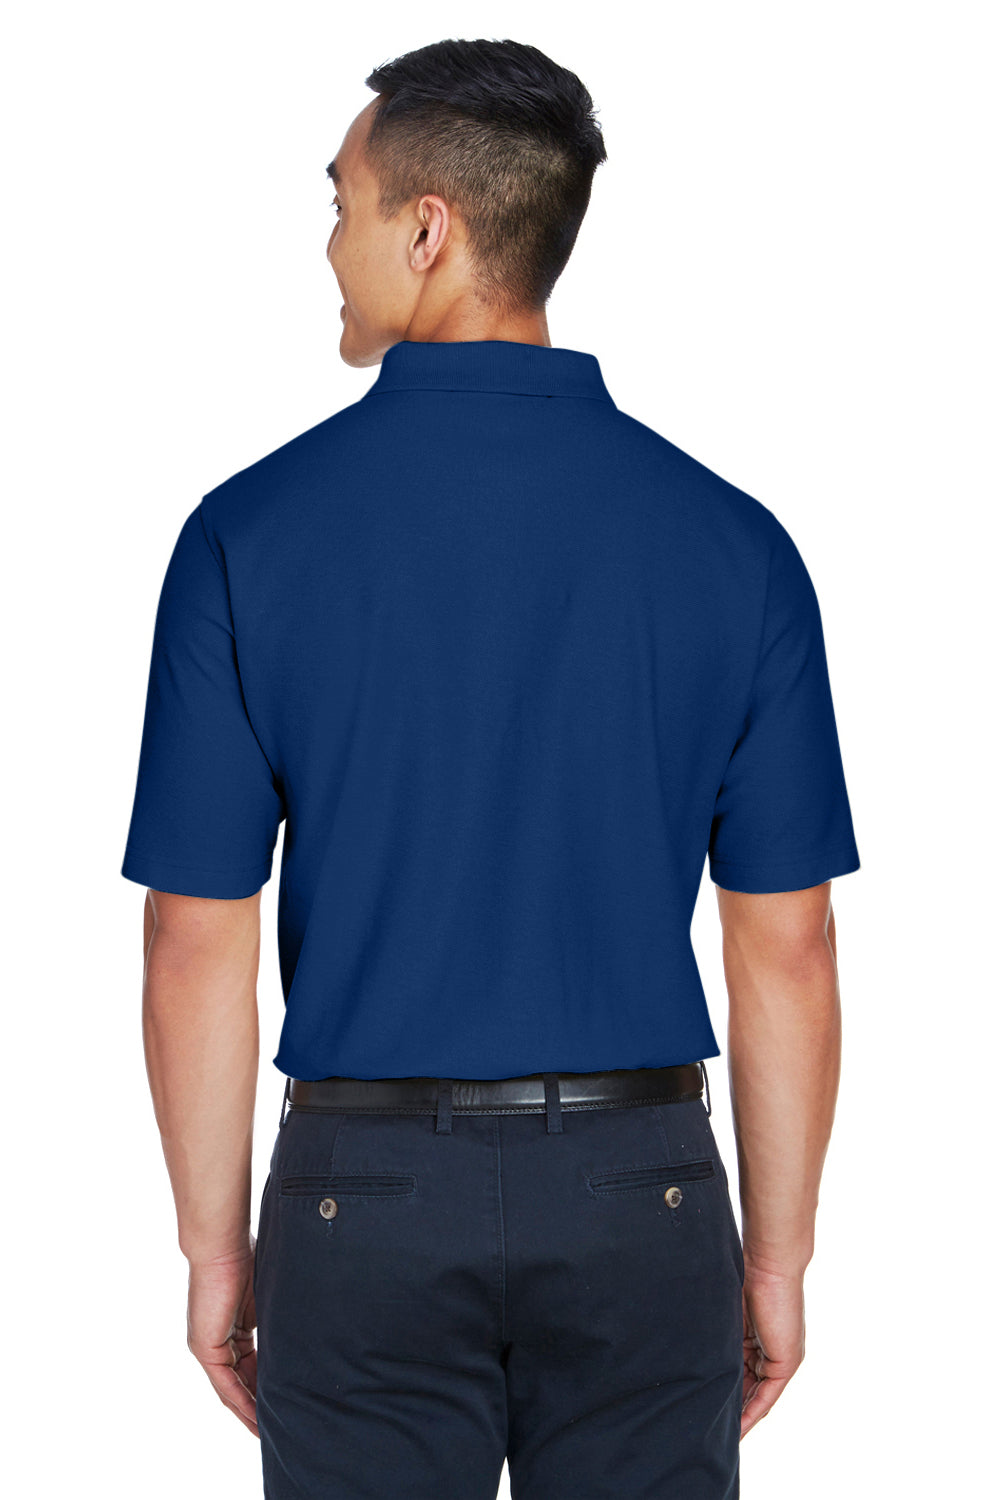 Devon & Jones DG150 Mens DryTec20 Performance Moisture Wicking Short Sleeve Polo Shirt Royal Blue Back